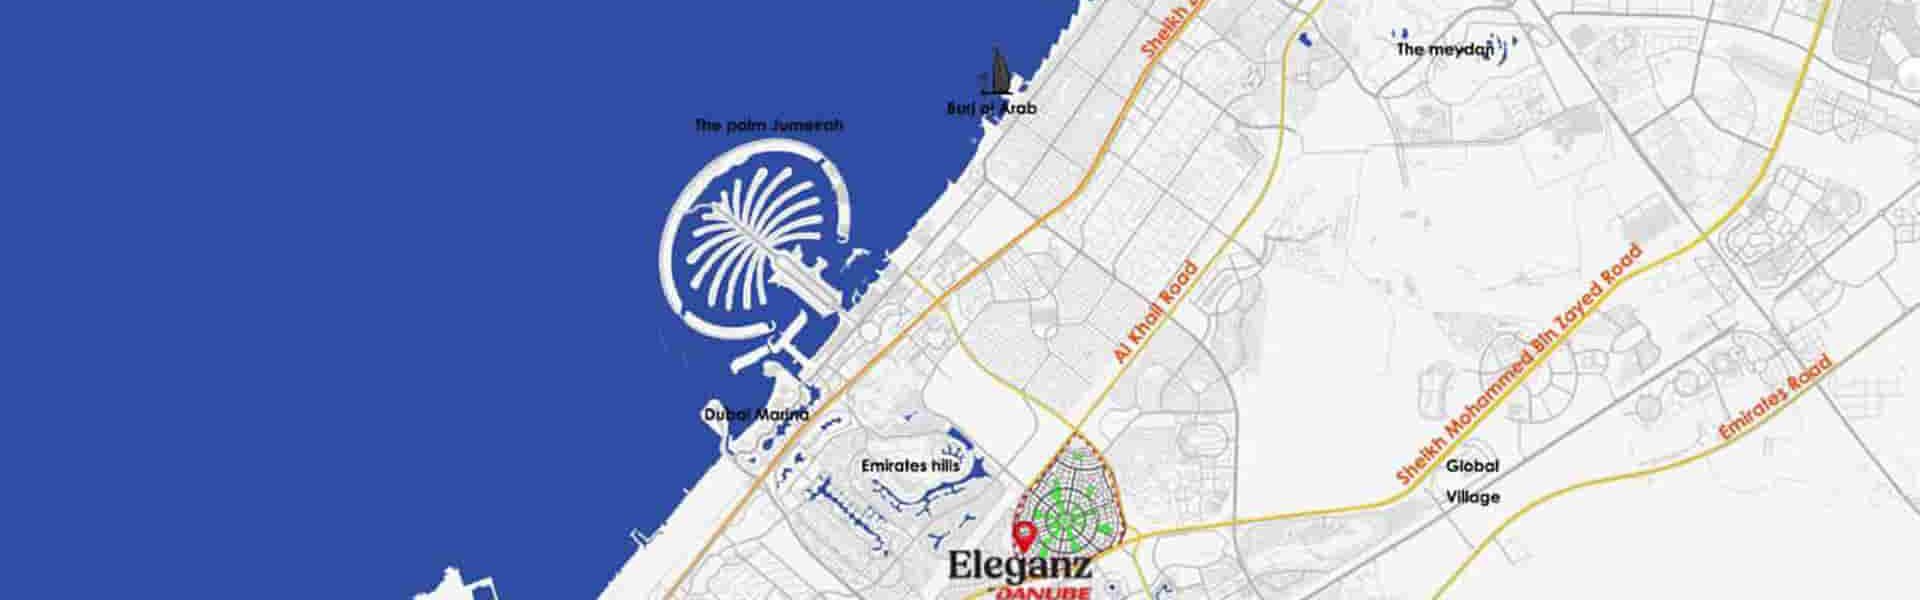 دسترسی پروژه تاون هاوس های الگانس با مناطق مهم دبی برای خرید ملک در دبی